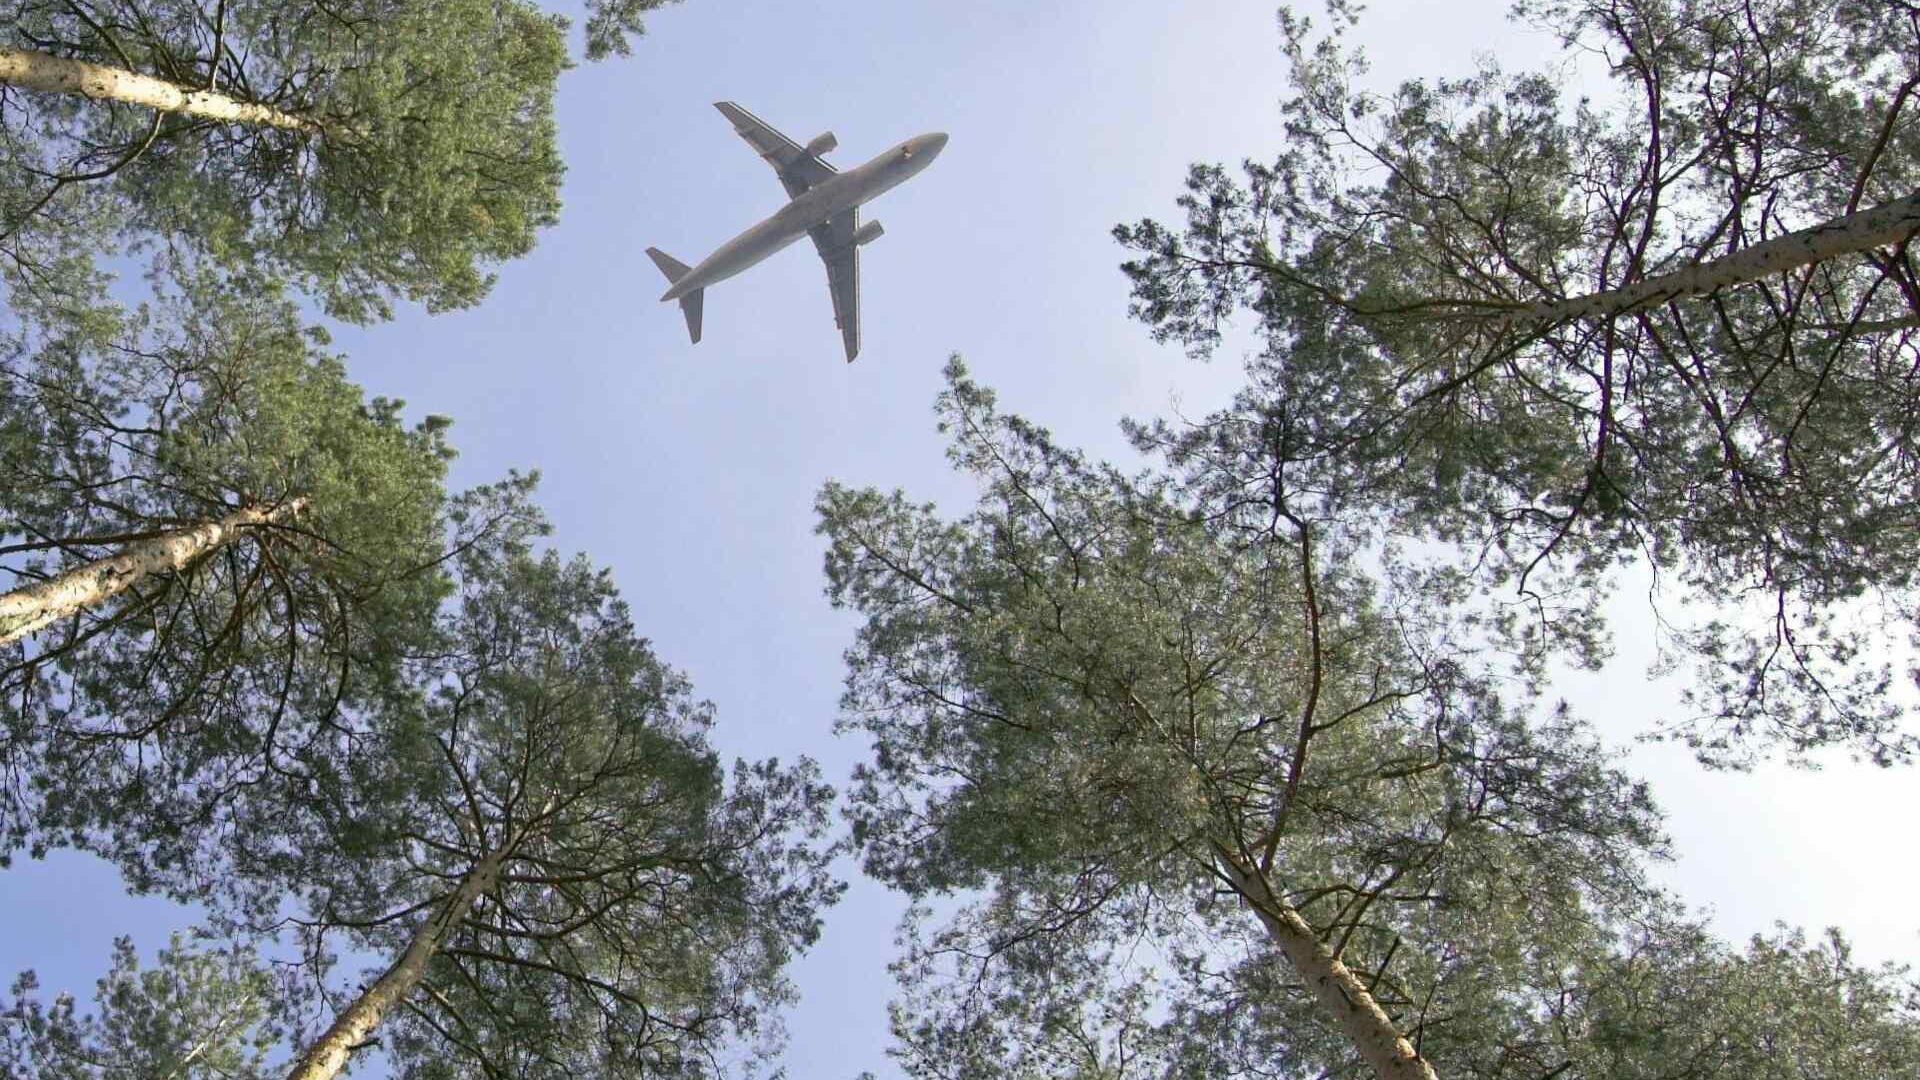 Svájci Légierő: a légi közlekedés és az általa használt üzemanyagok jelentősen hozzájárulhatnak az éghajlatváltozás elleni küzdelemhez